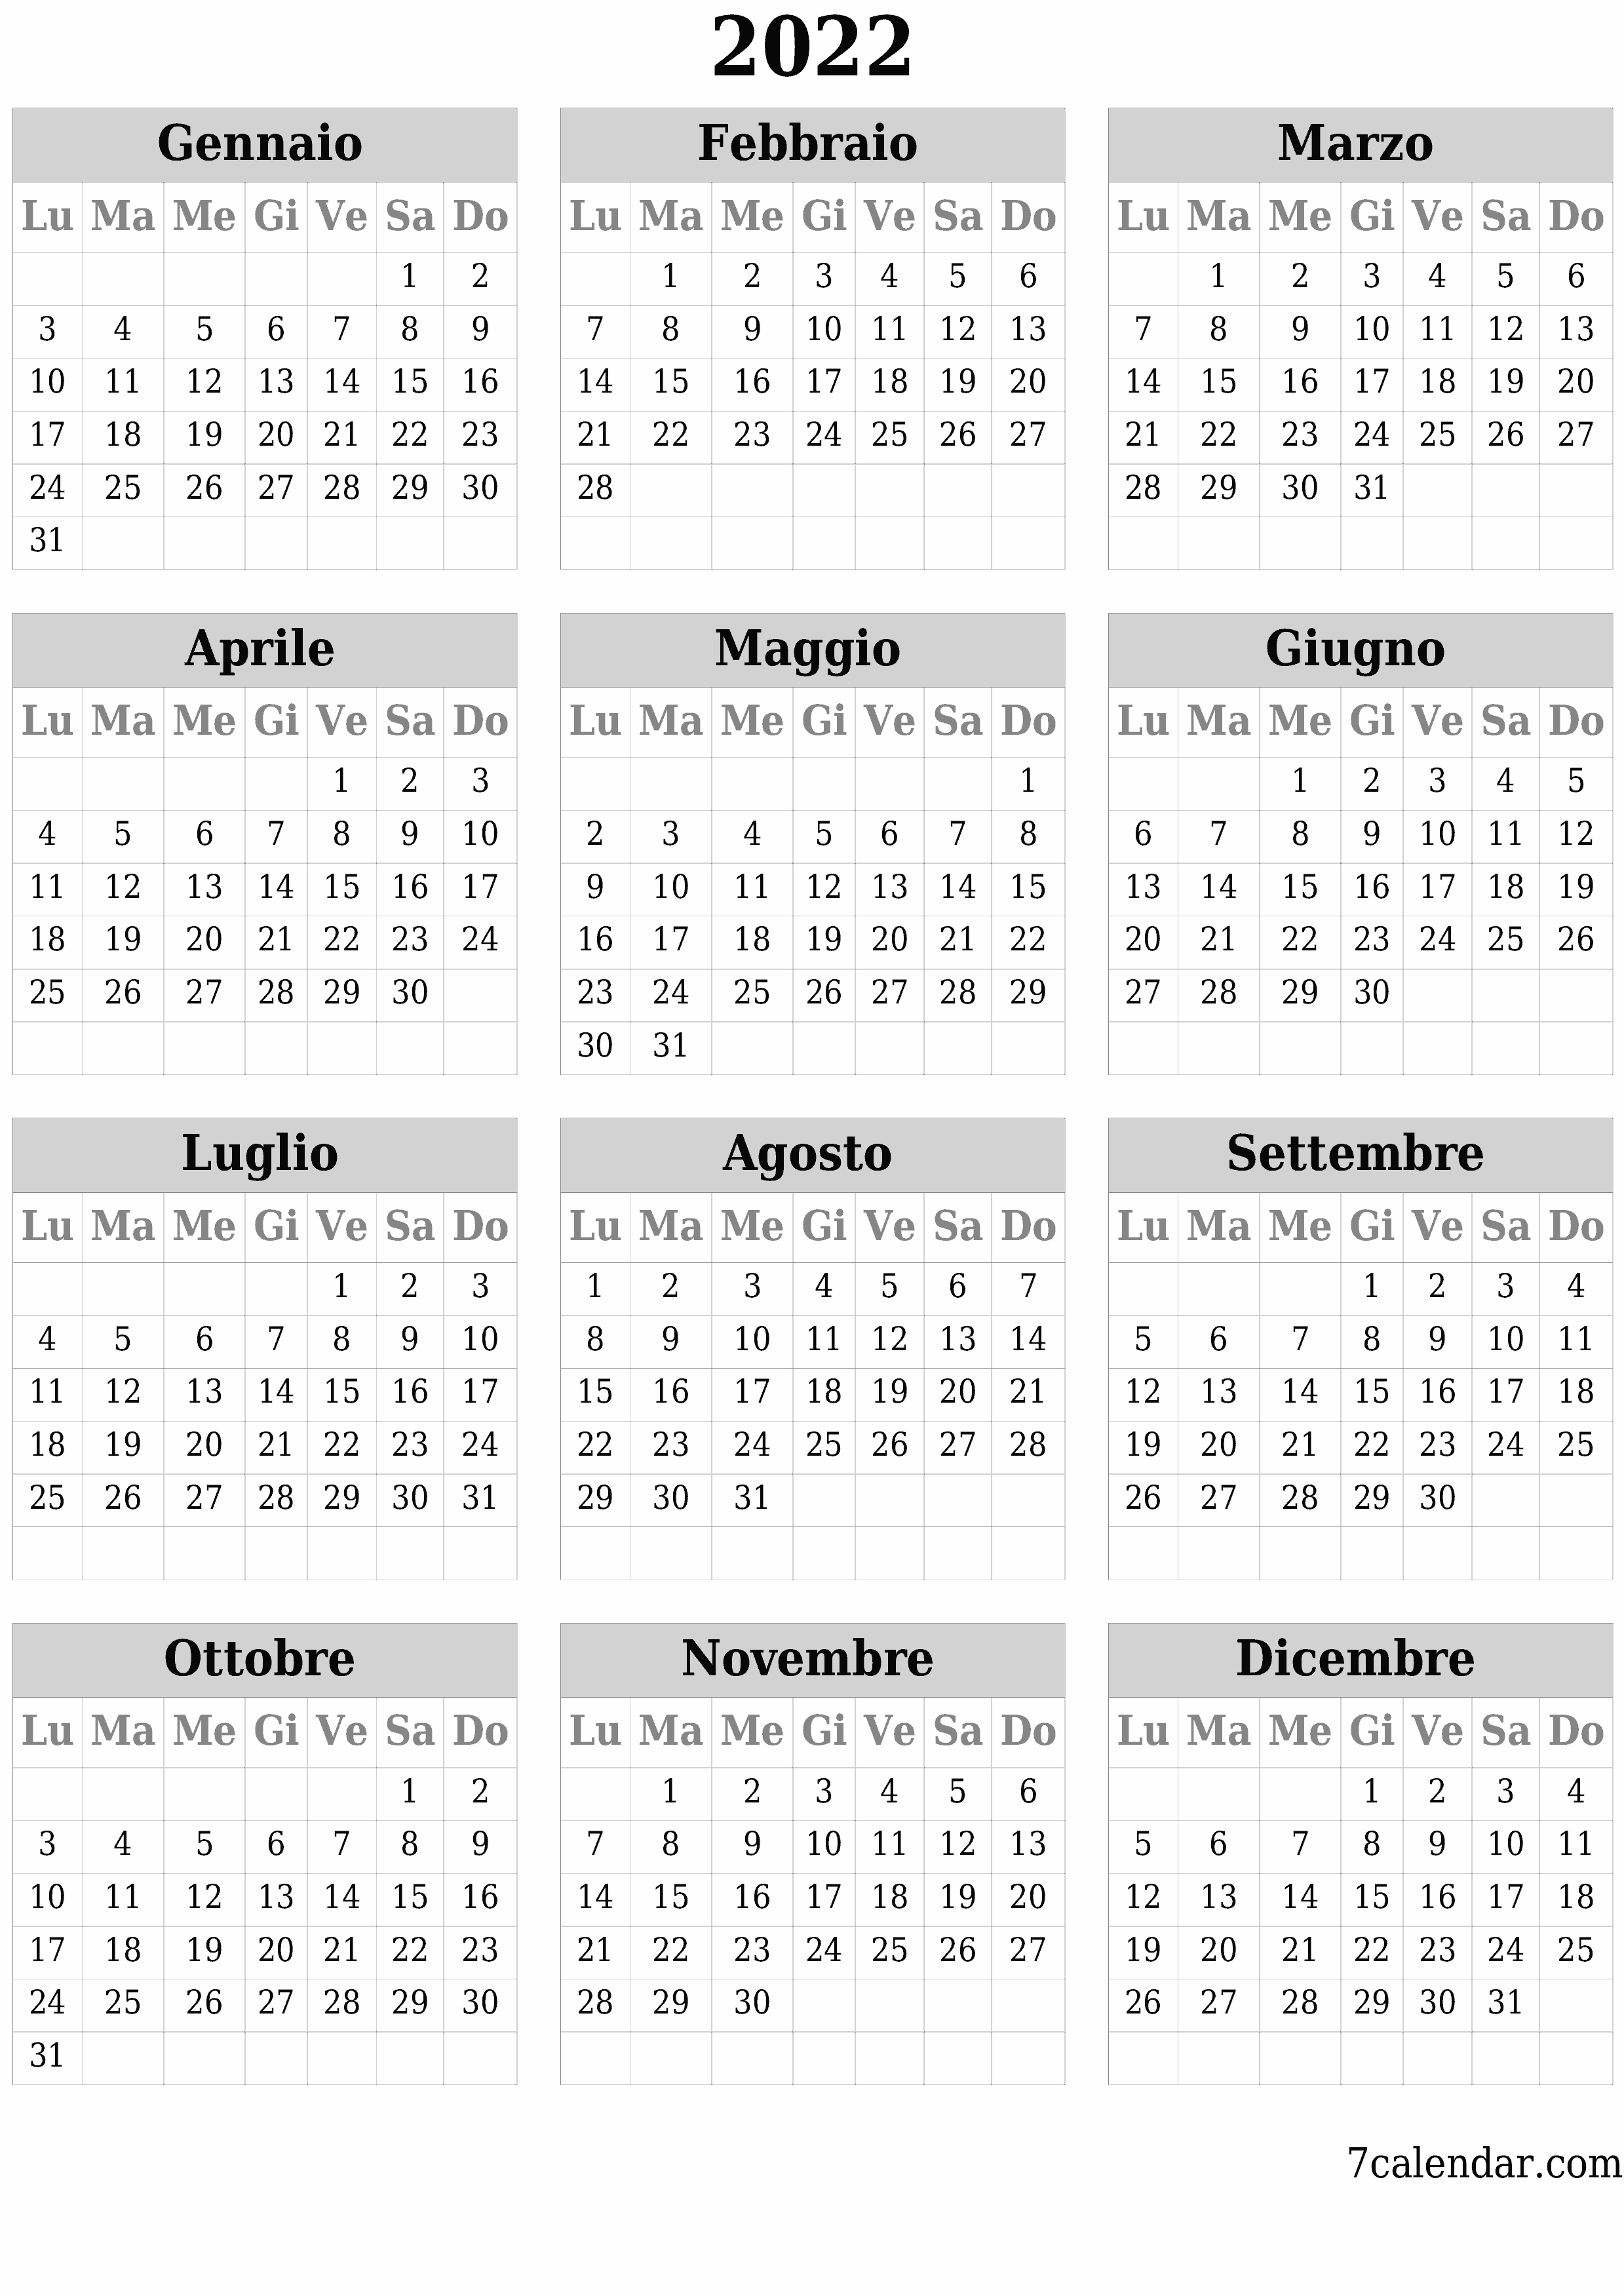 Calendario annuale vuoto per l'anno 2022 salva e stampa in PDF PNG Italian - 7calendar.com